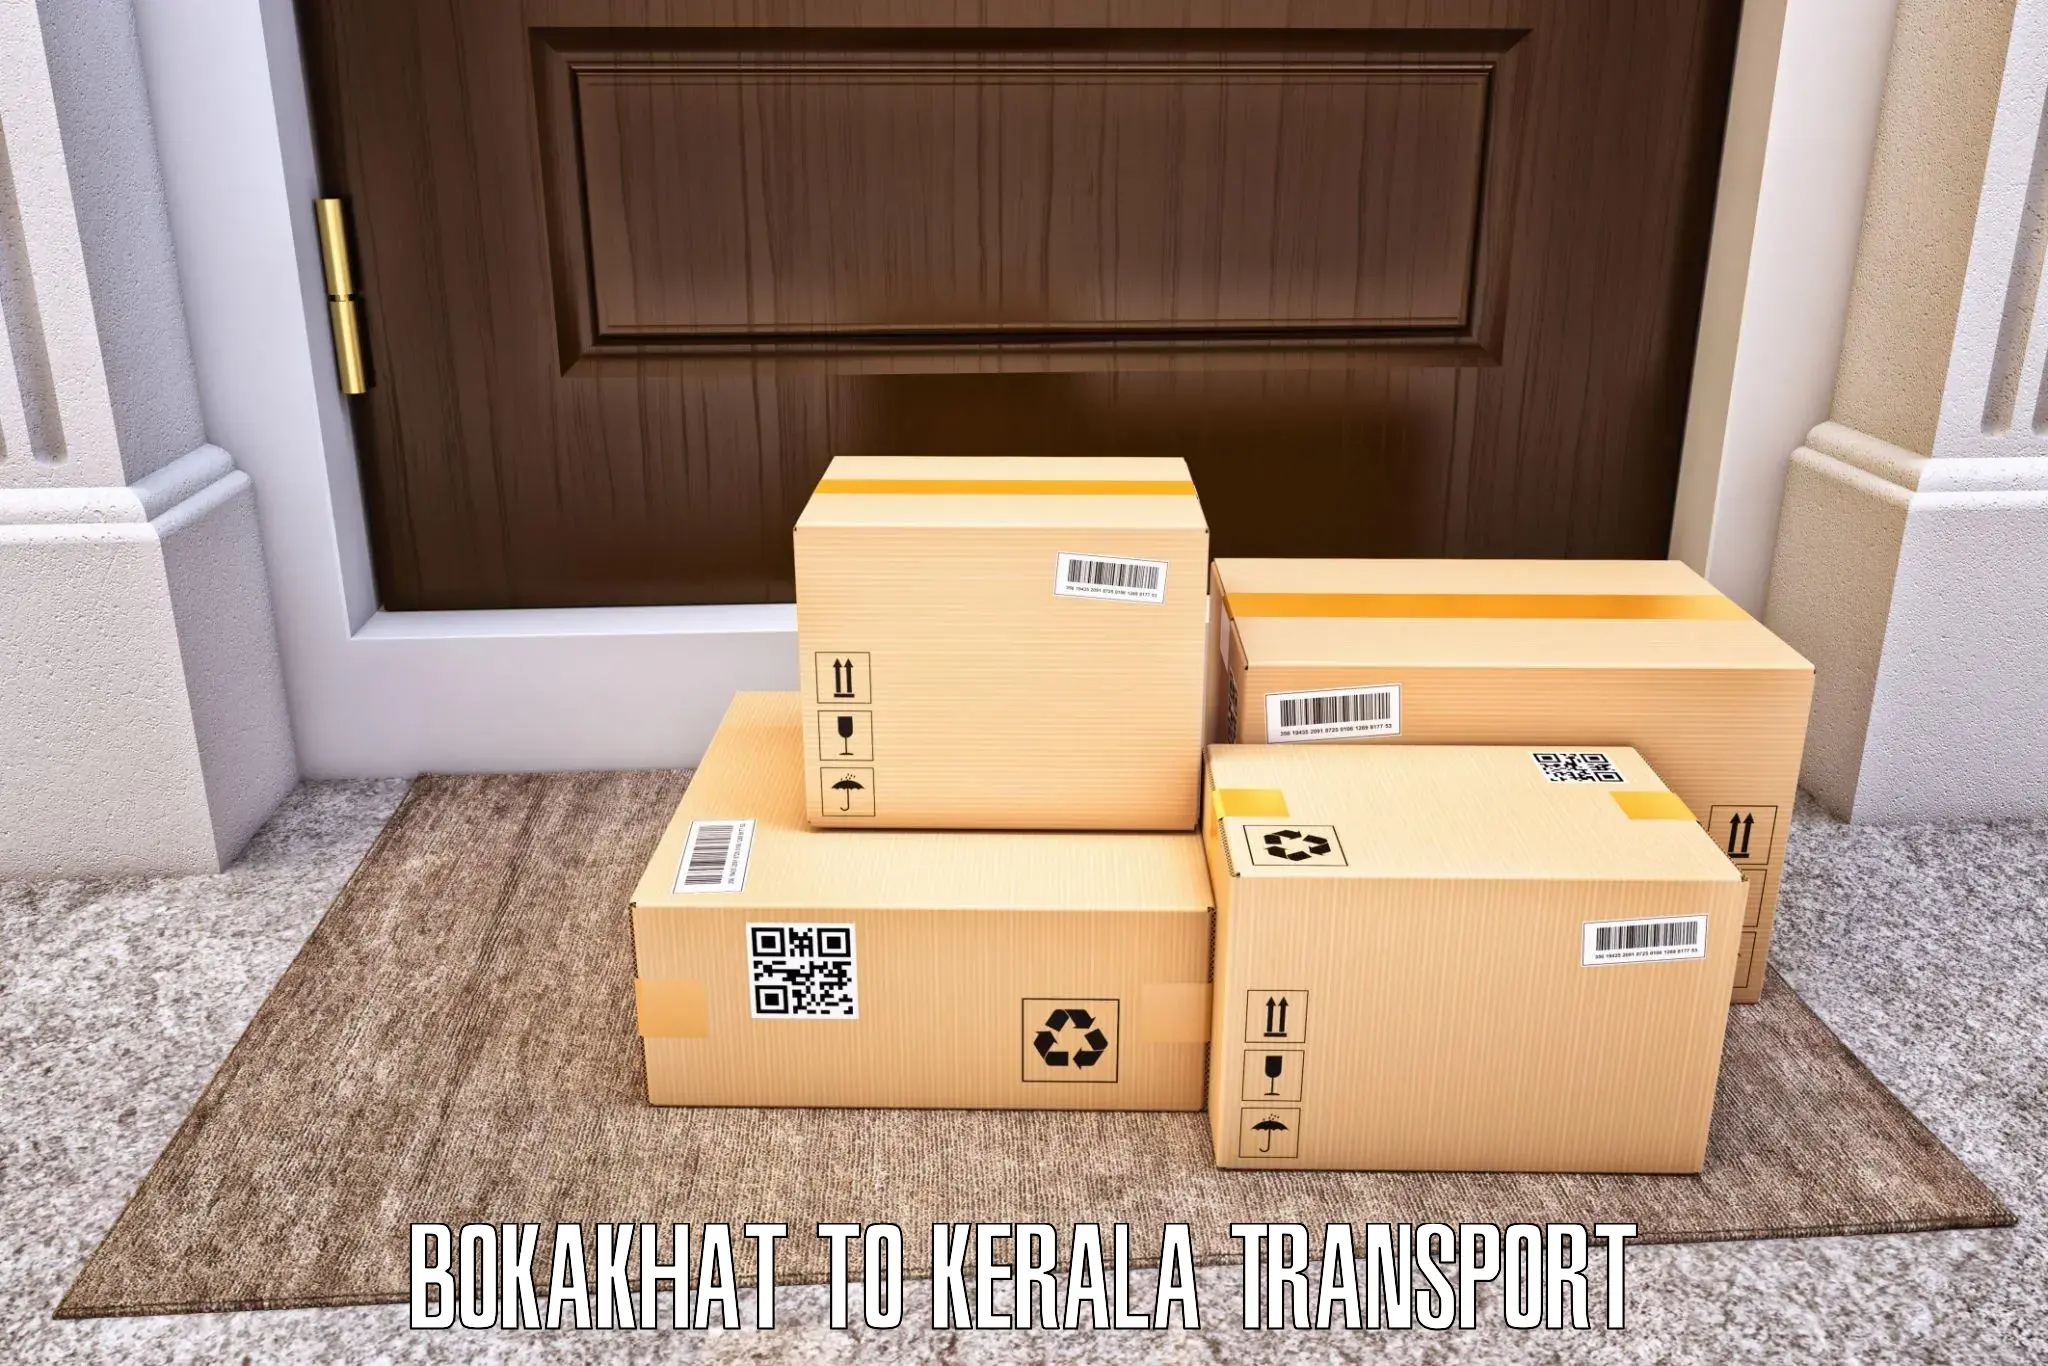 Shipping partner Bokakhat to Munnar